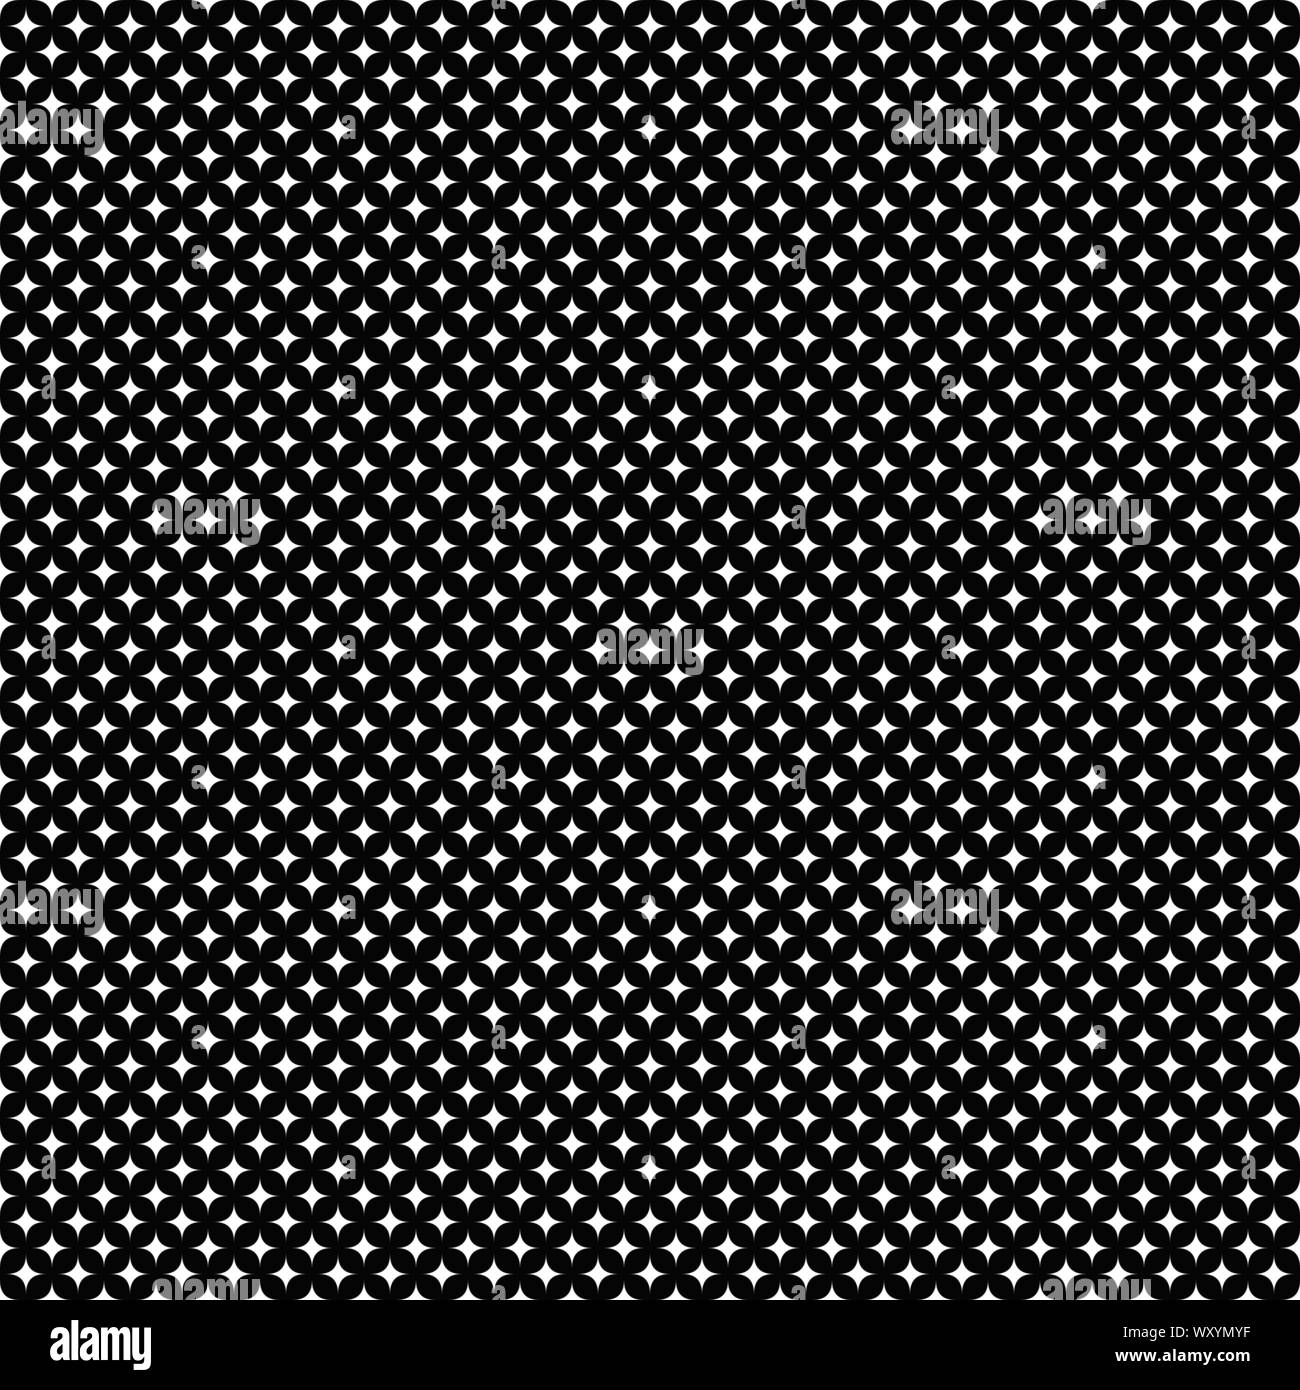 Monochrome nahtlose star Muster Hintergrund - Abstrakte schwarze und weiße Vektor Design von Stars Stock Vektor